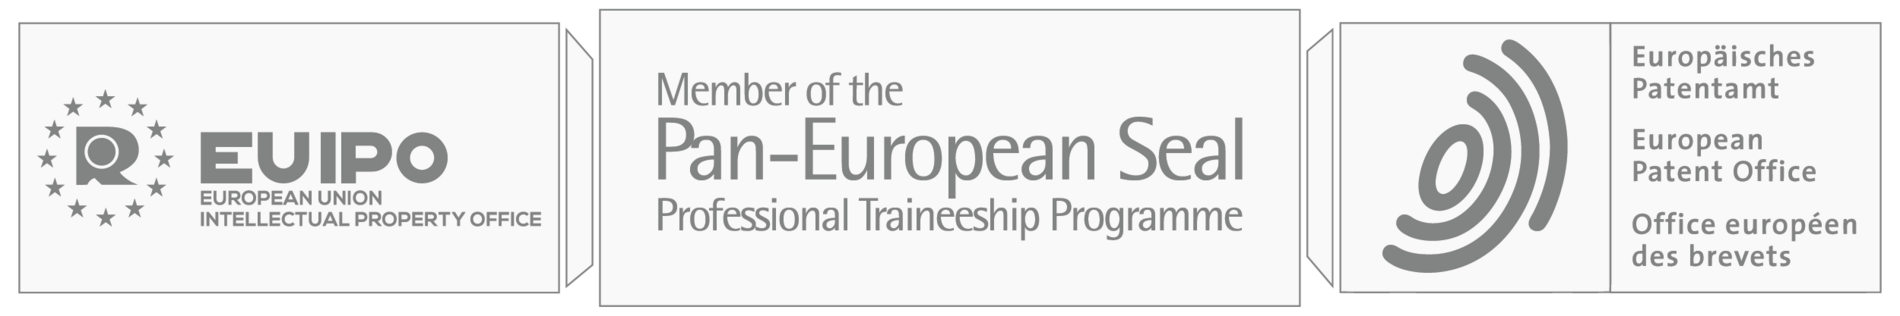 Bildmontage der Logos von EUIPO, Pan-European Seal Programm und des Europäischen Patenamts 